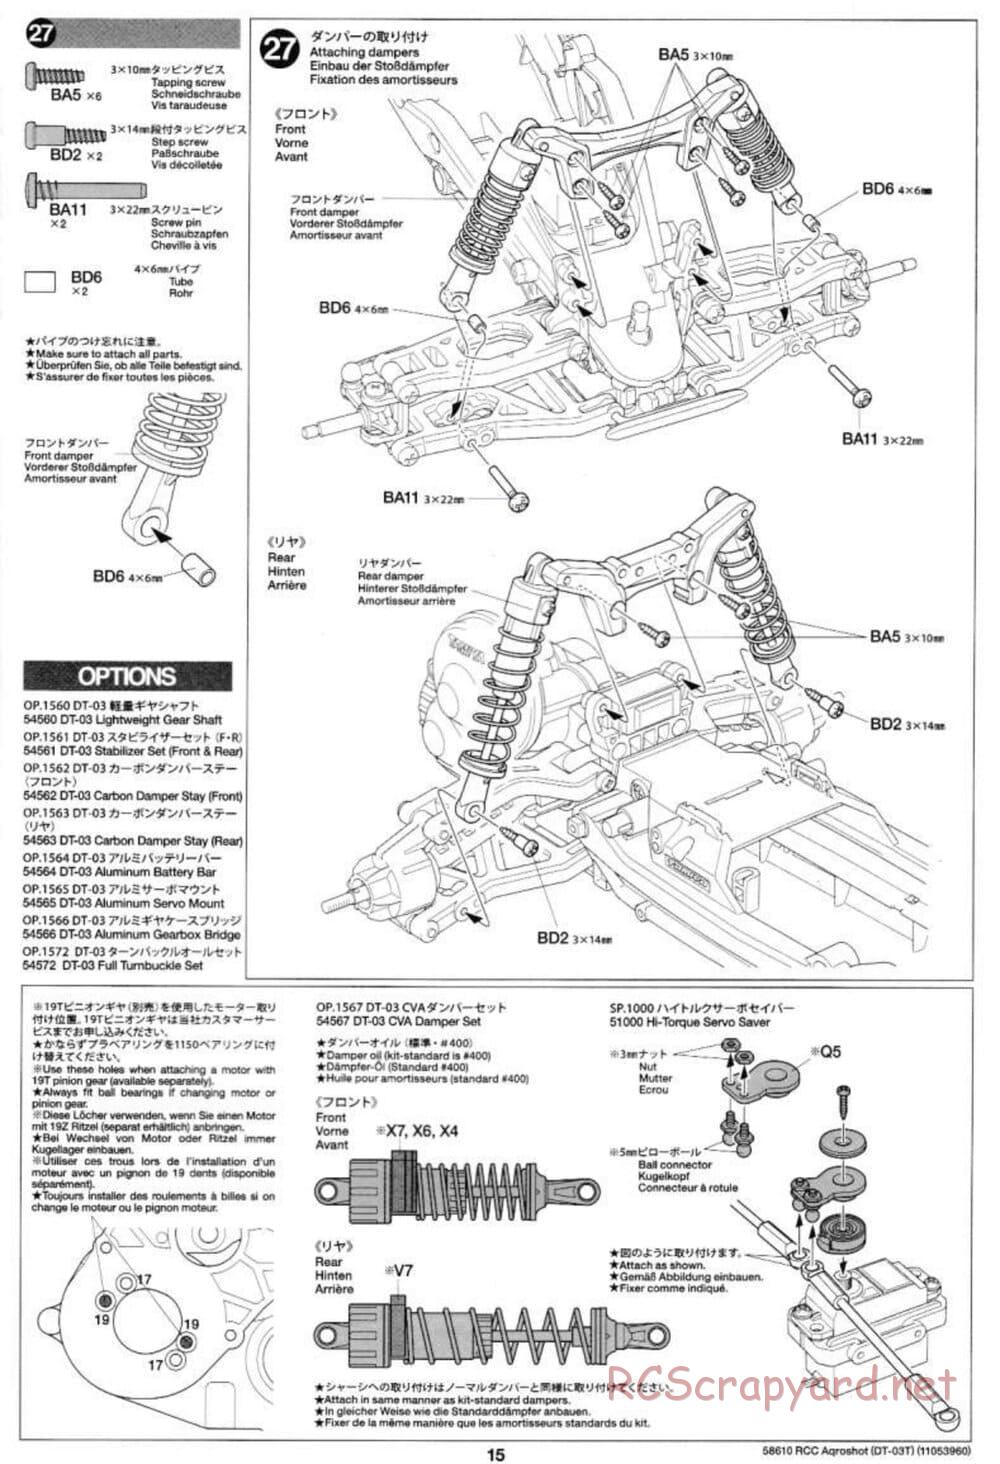 Tamiya - Aqroshot Chassis - Manual - Page 15